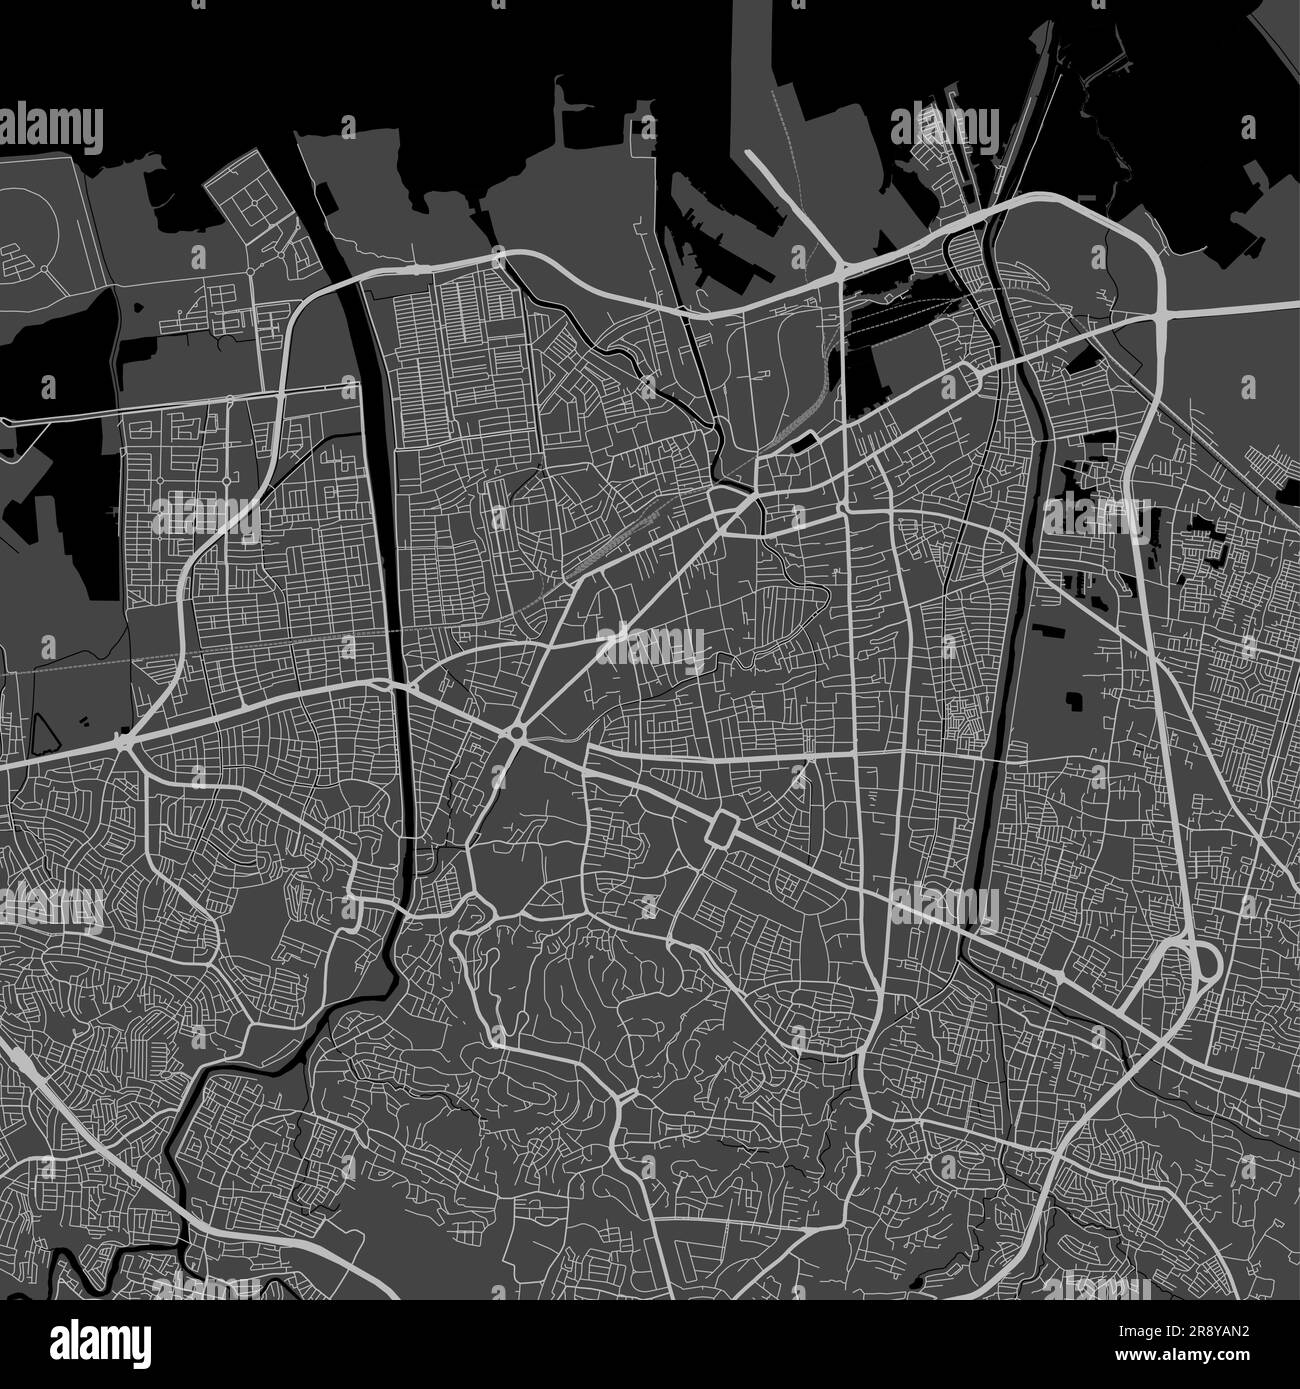 Mappa della città di Semarang. Poster urbano in bianco e nero. Immagine della mappa stradale con vista dell'area verticale della città metropolitana. Illustrazione Vettoriale